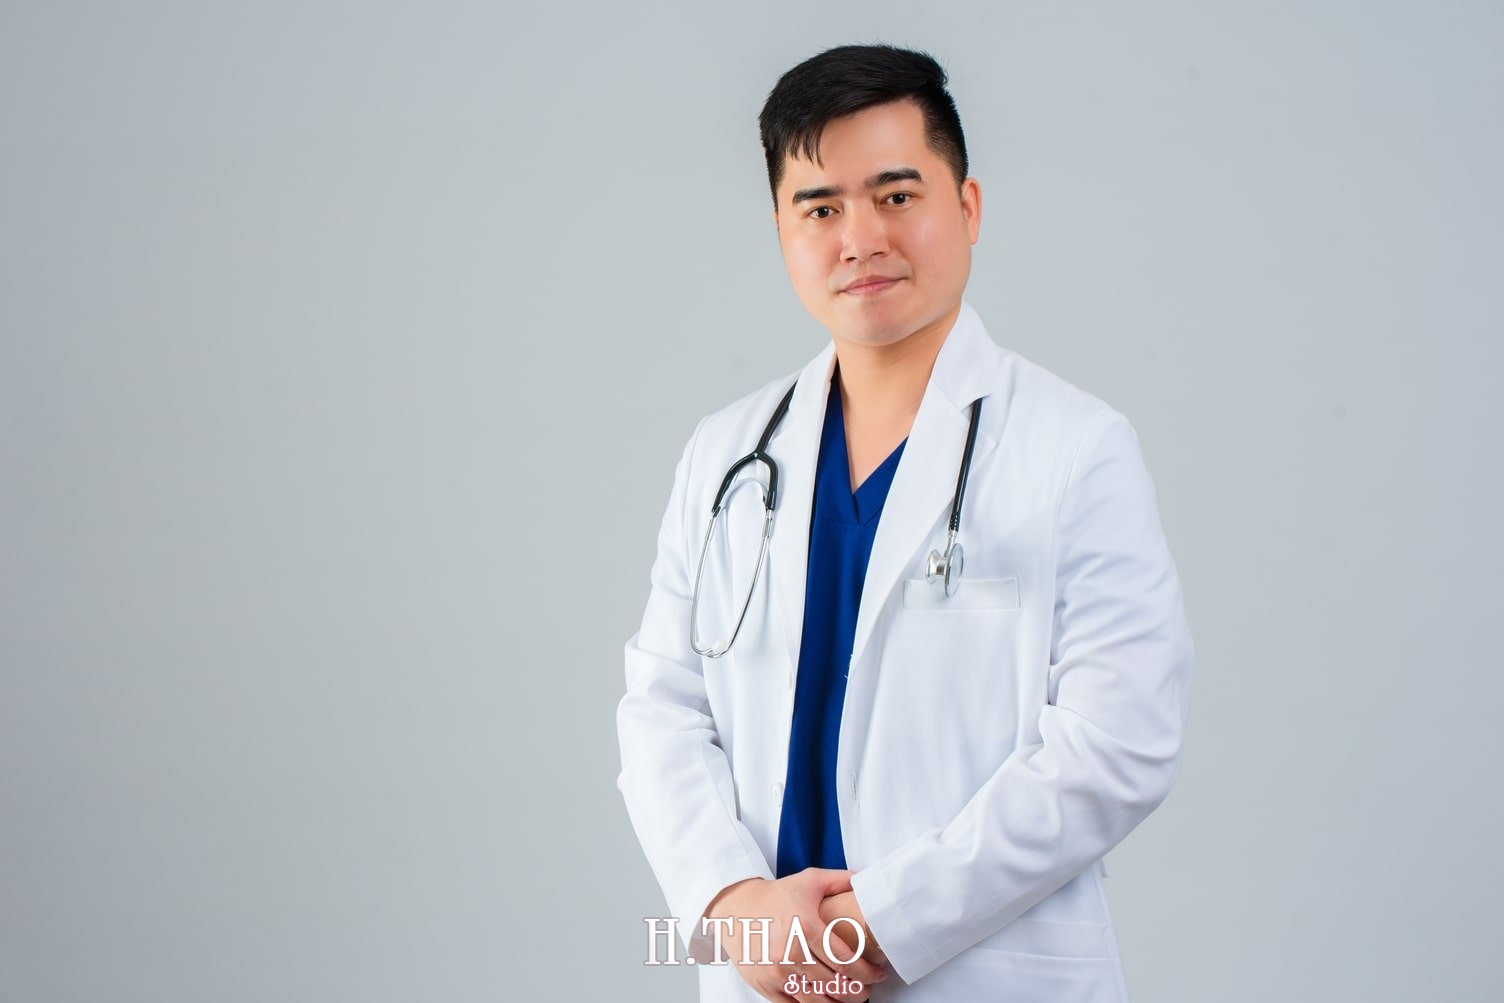 Anh Doanh nhan 56 - Tổng hợp ảnh profile nghề nghiệp bác sĩ, ngân hàng đẹp- HThao Studio